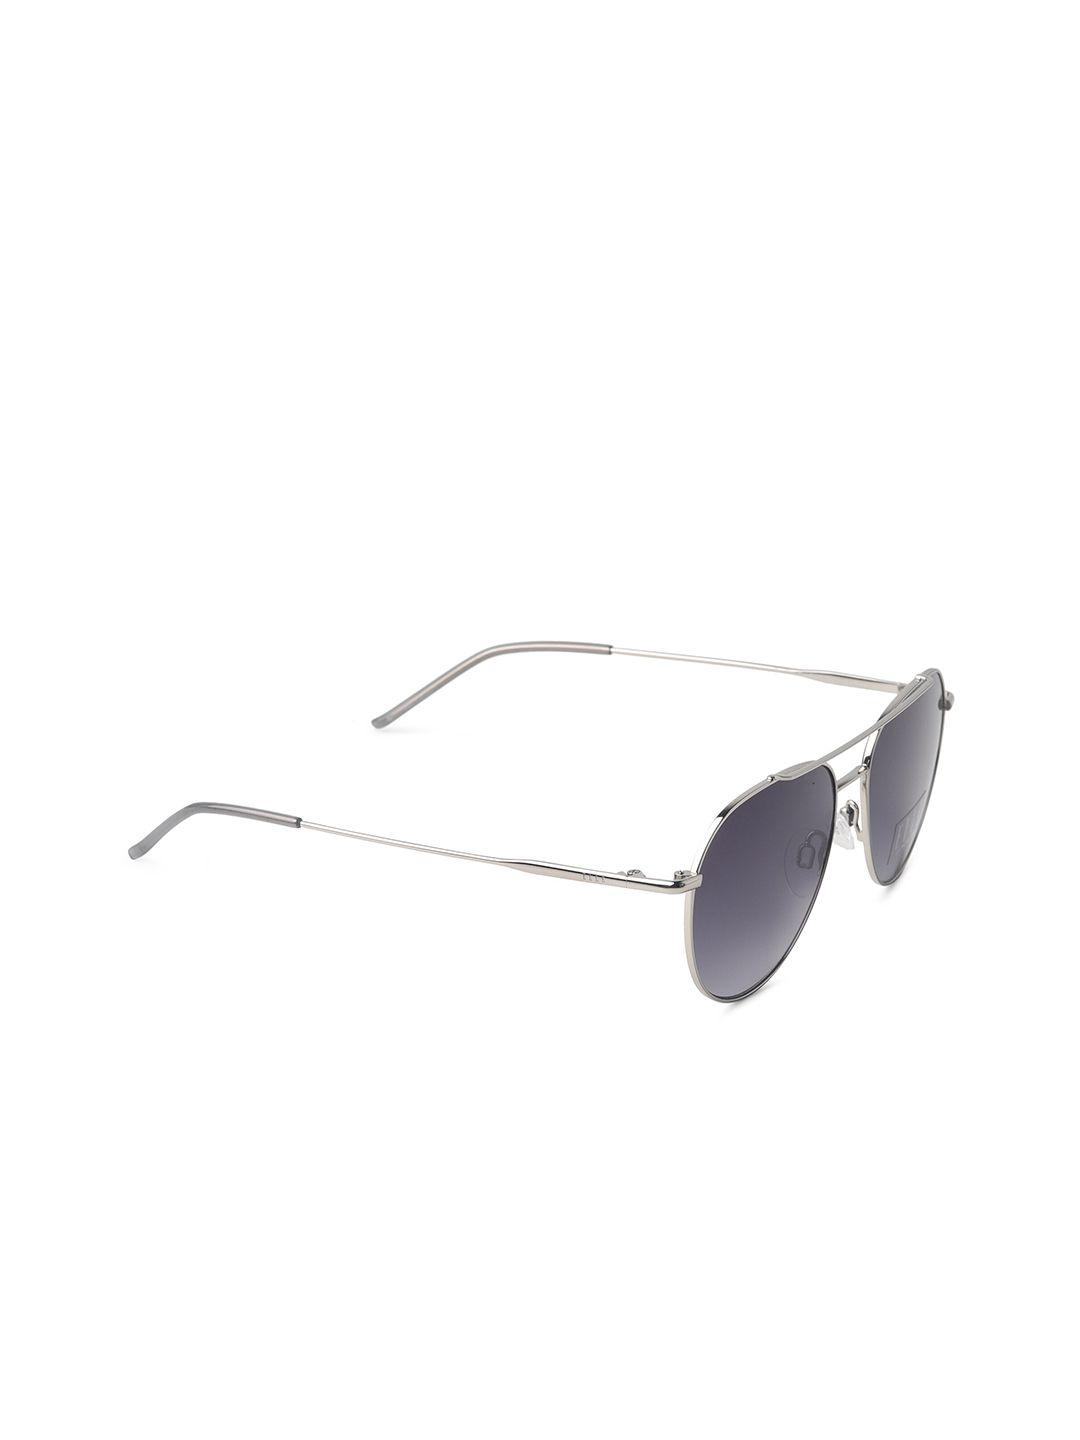 elle women grey lens & silver-toned full rim aviator sunglasses